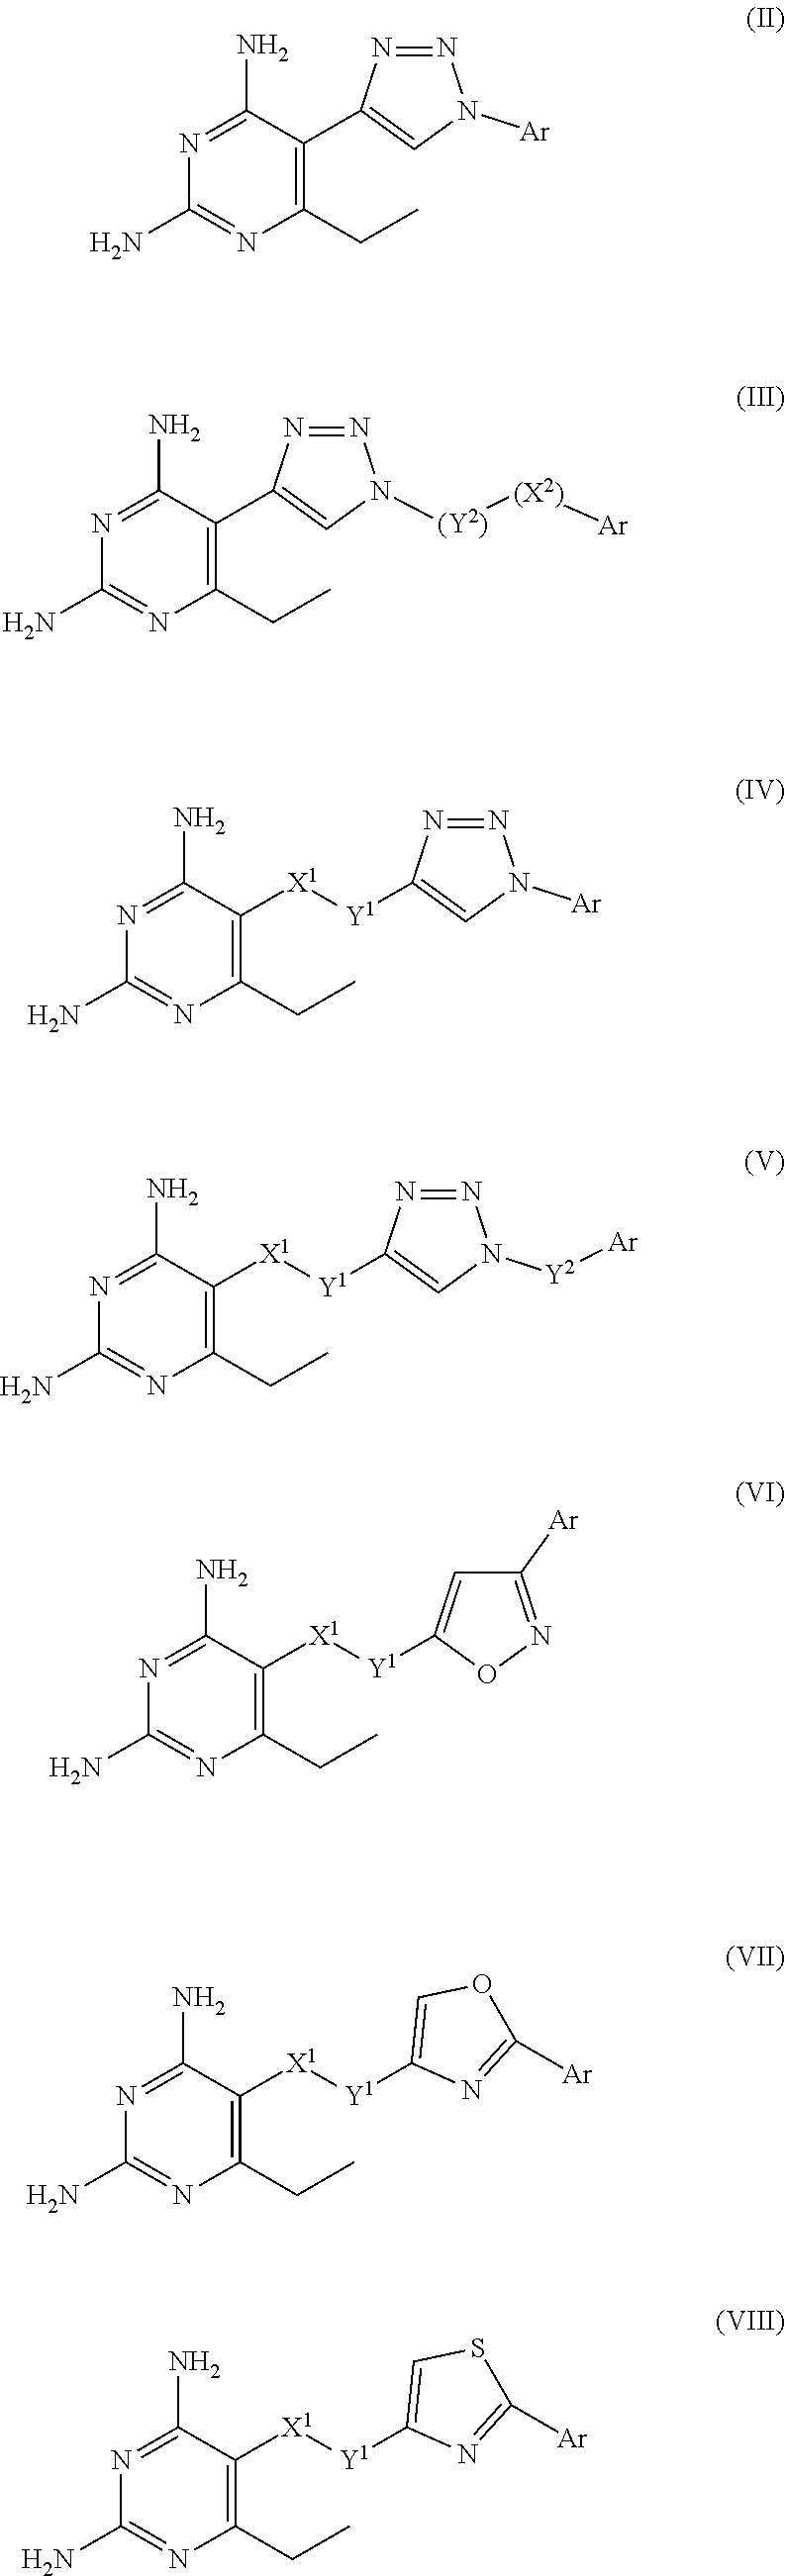 2,4-diamino-6-ethylpyrimidine derivatives with antimalarial activities against <i>Plasmodium falciparum</i>